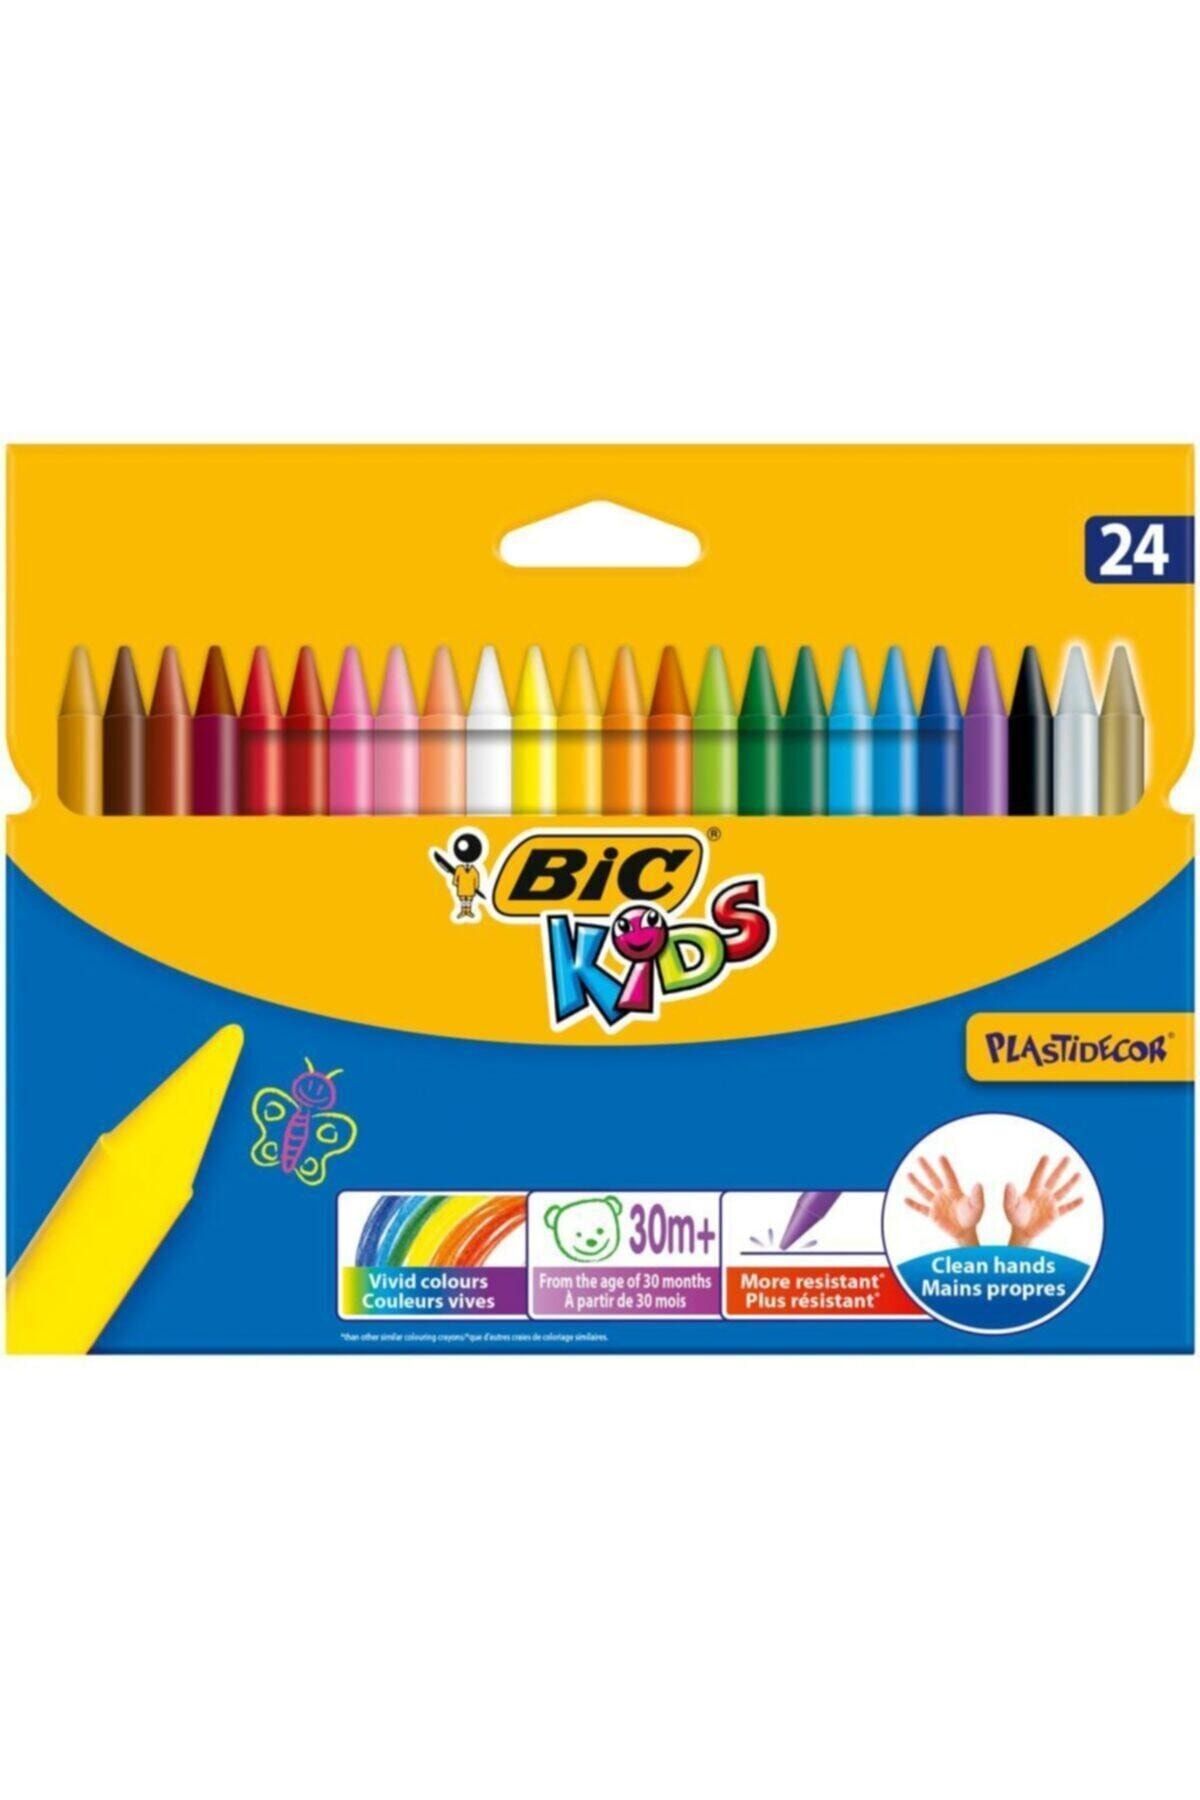 Bic Kids Plastidecor Elleri Kirletmeyen Silinebilir Pastel 24 Renk 8297721